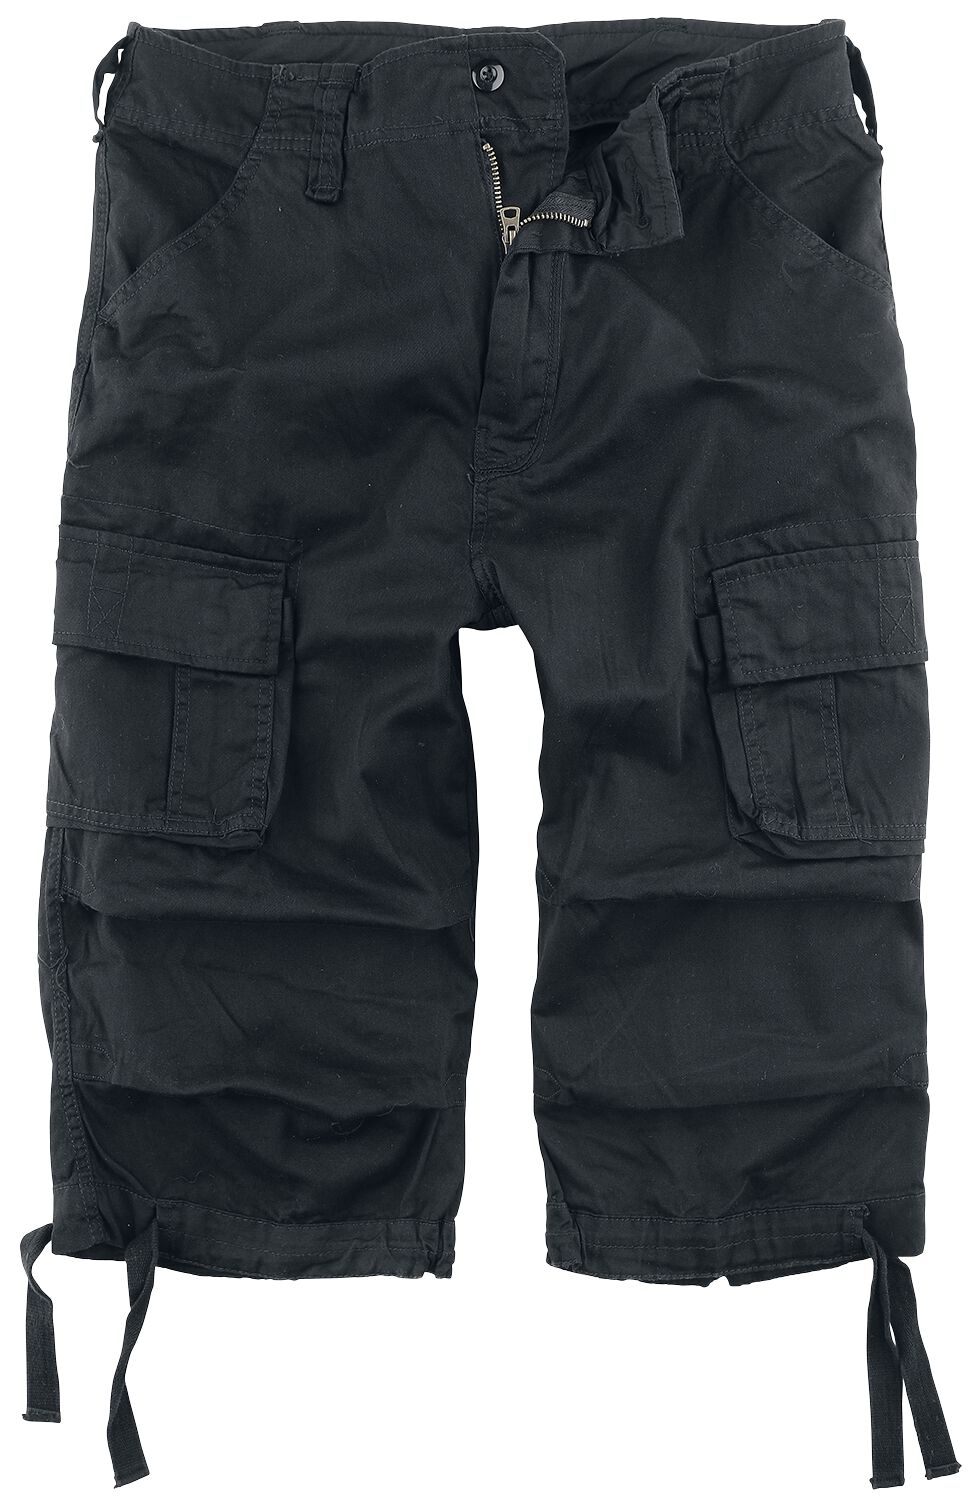 Brandit Short - Urban Legend 3/4 Shorts - S bis 3XL - für Männer - Größe XXL - schwarz